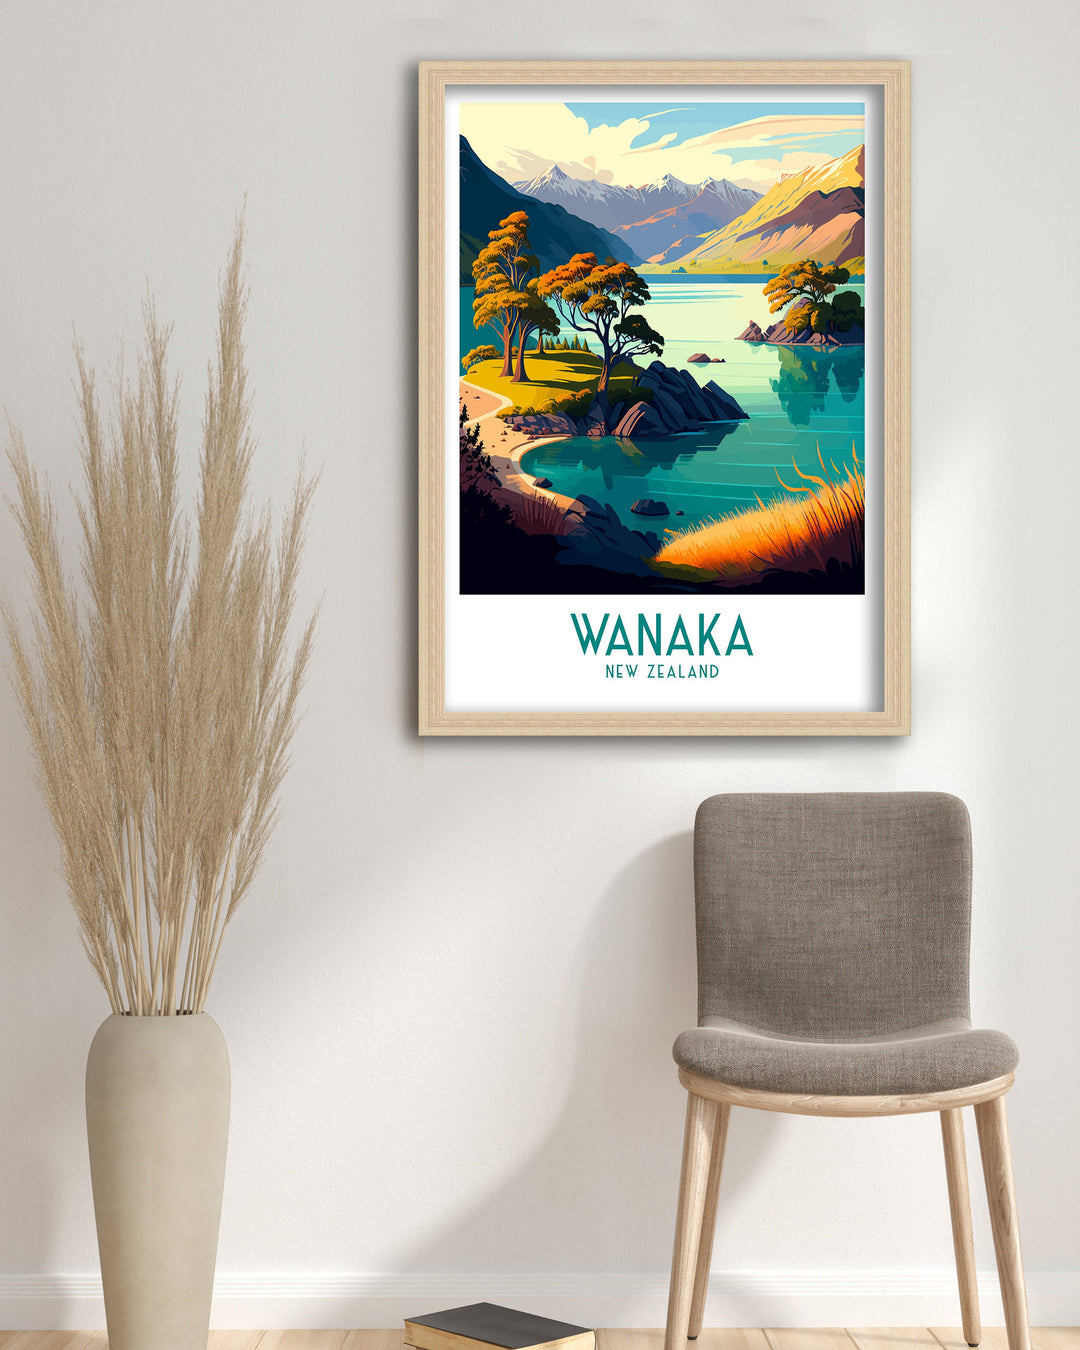 Wanaka Travel Poster Wanaka Wall Decor Wanaka Home Living Decor Wanaka New Zealand Wanaka Illustration Travel Poster Gift For Wanaka